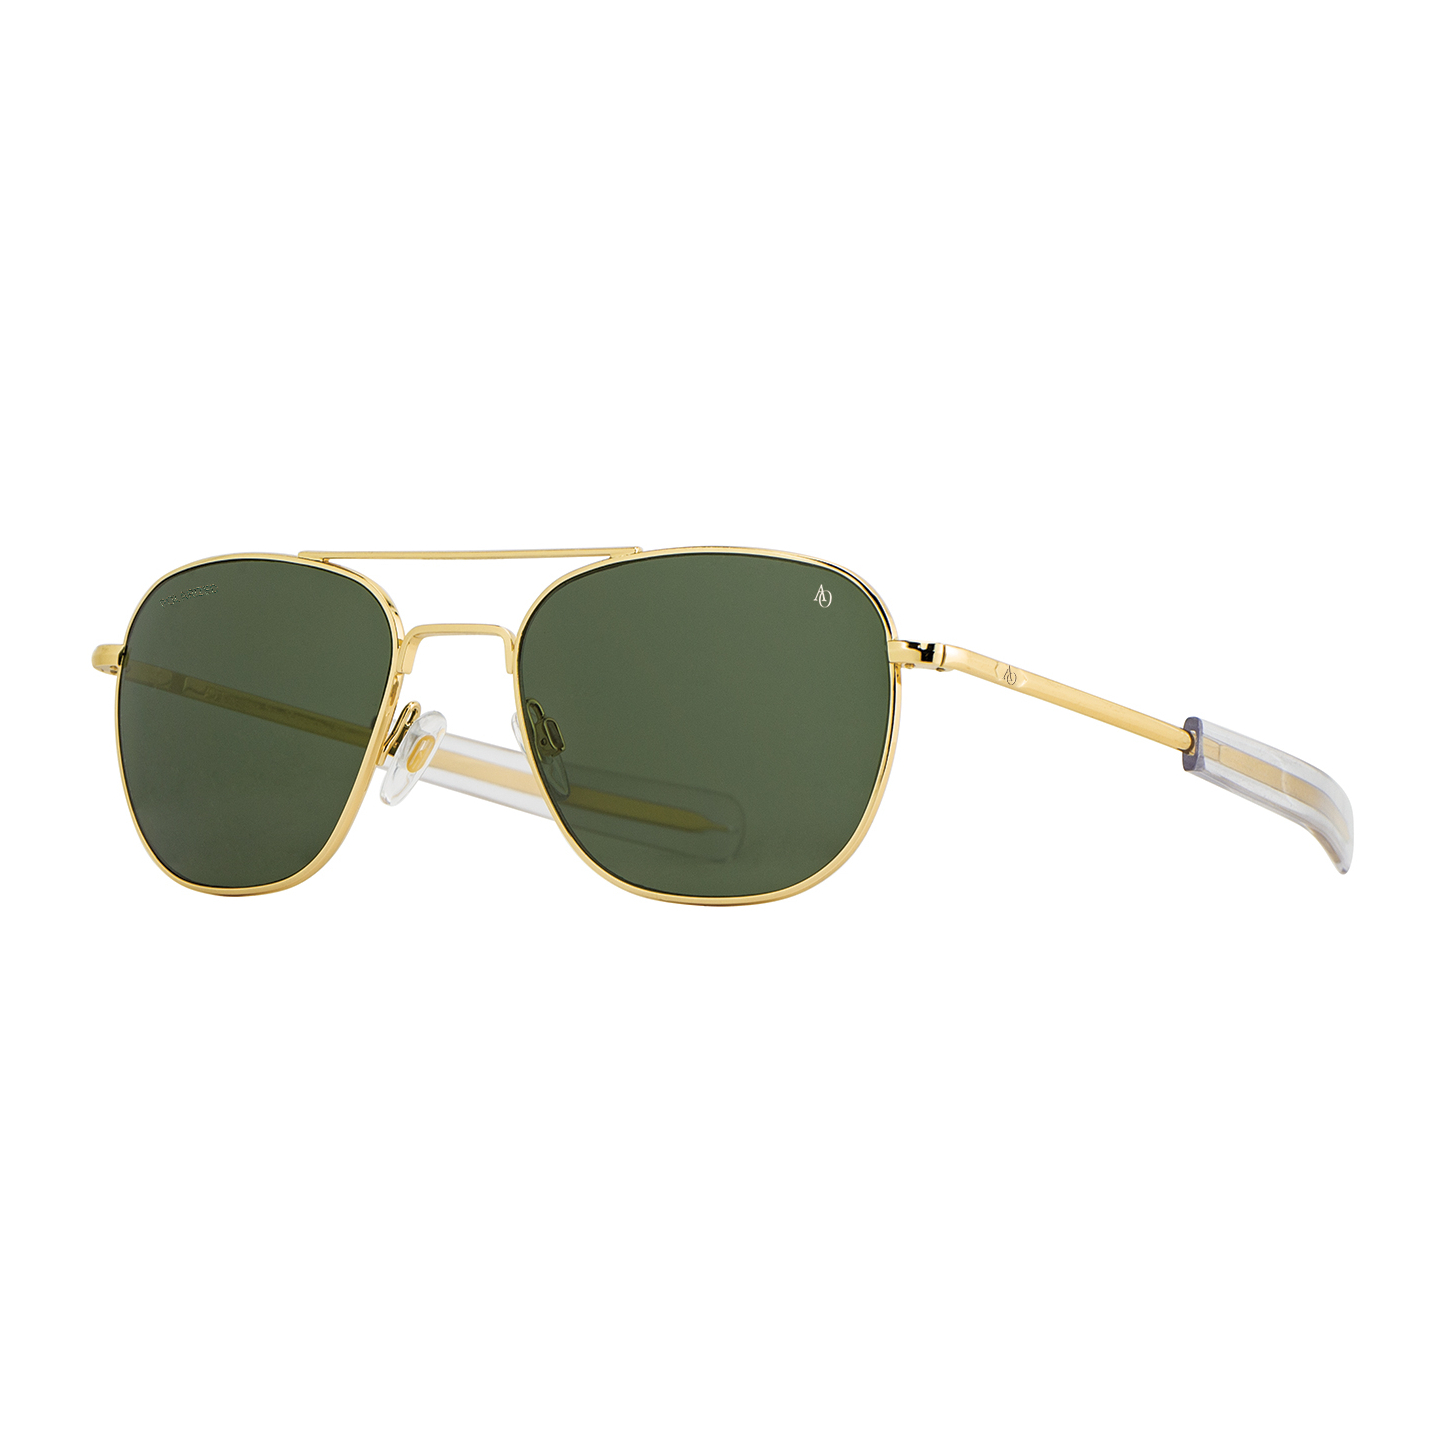 sluneční brýle Original Pilot zlaté zelená skla v.52